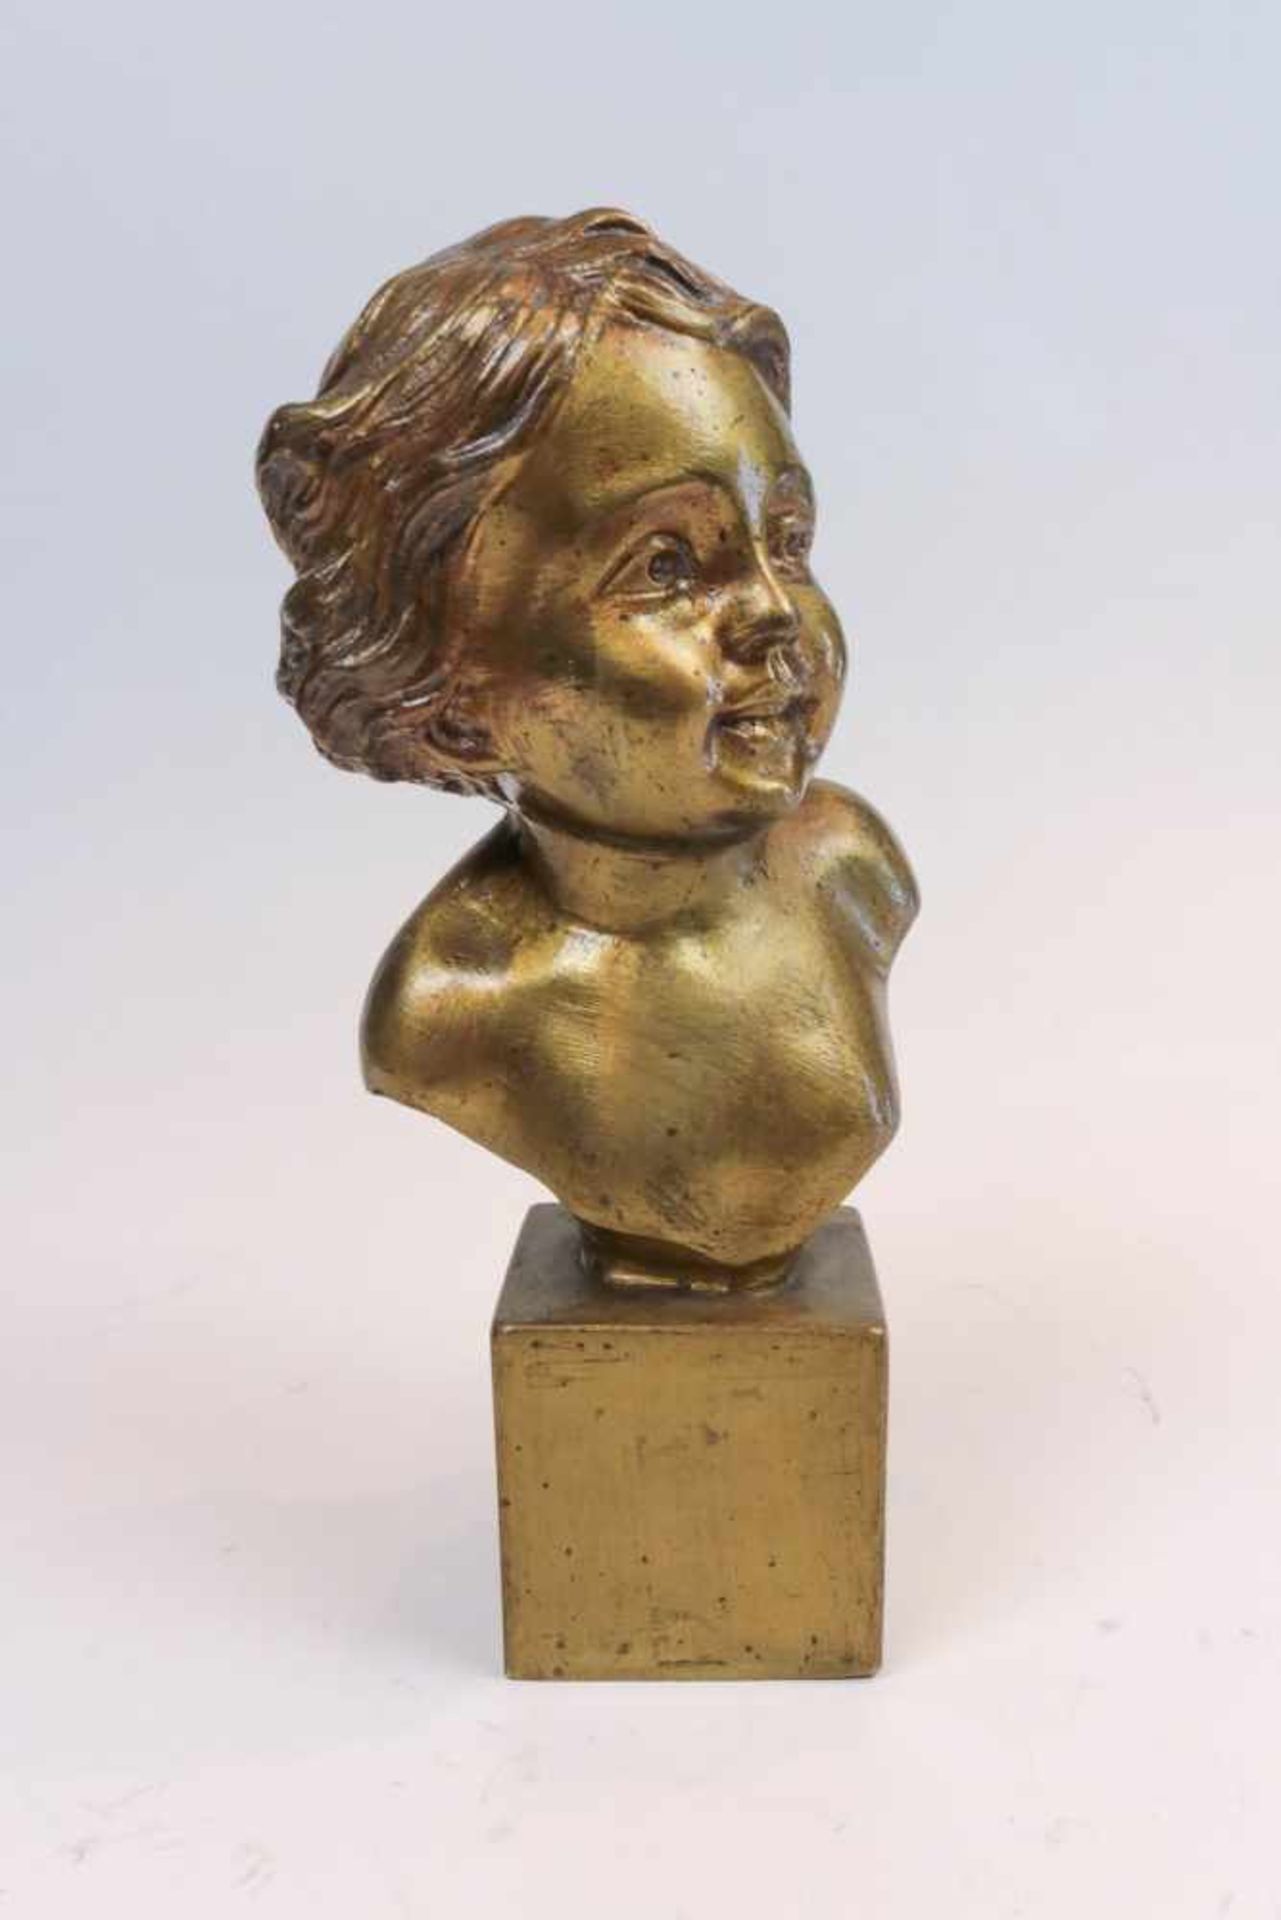 Giun Mädchenkopf mit lockigem Haar auf Sockel. Bronze. H. 25,5 cm. Rückseitig sign. Giun, dat. 5.